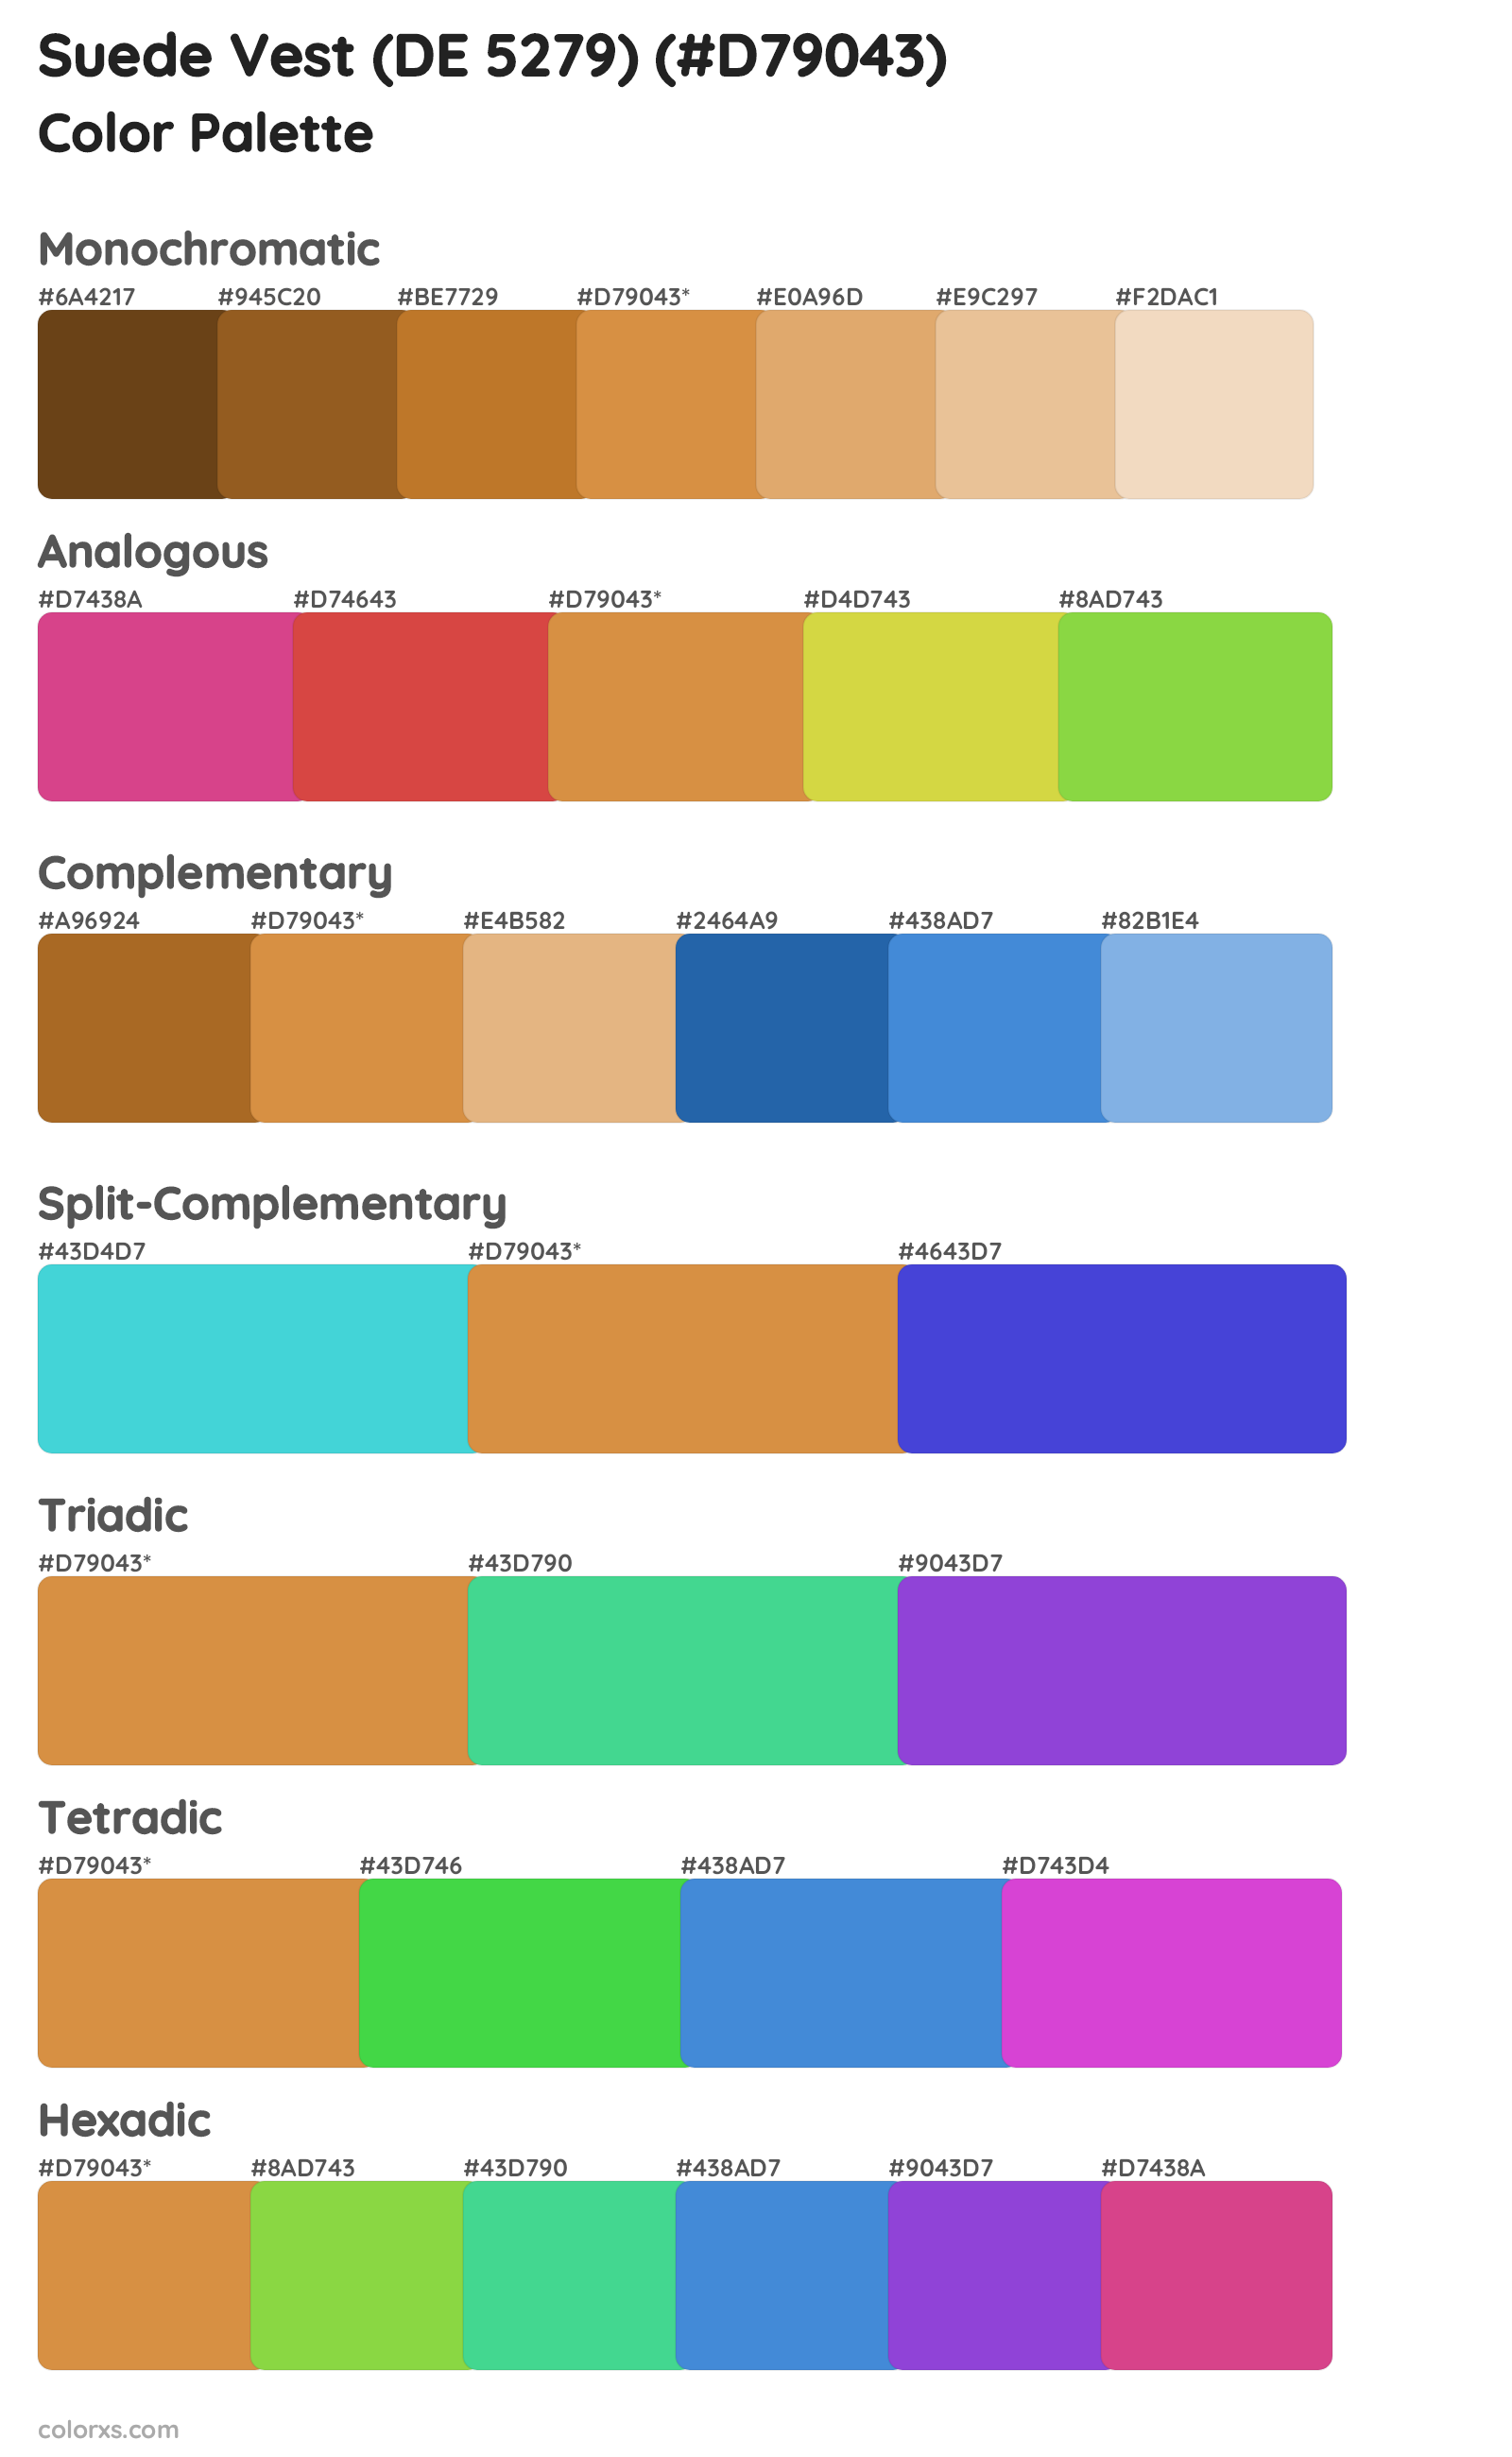 Suede Vest (DE 5279) Color Scheme Palettes